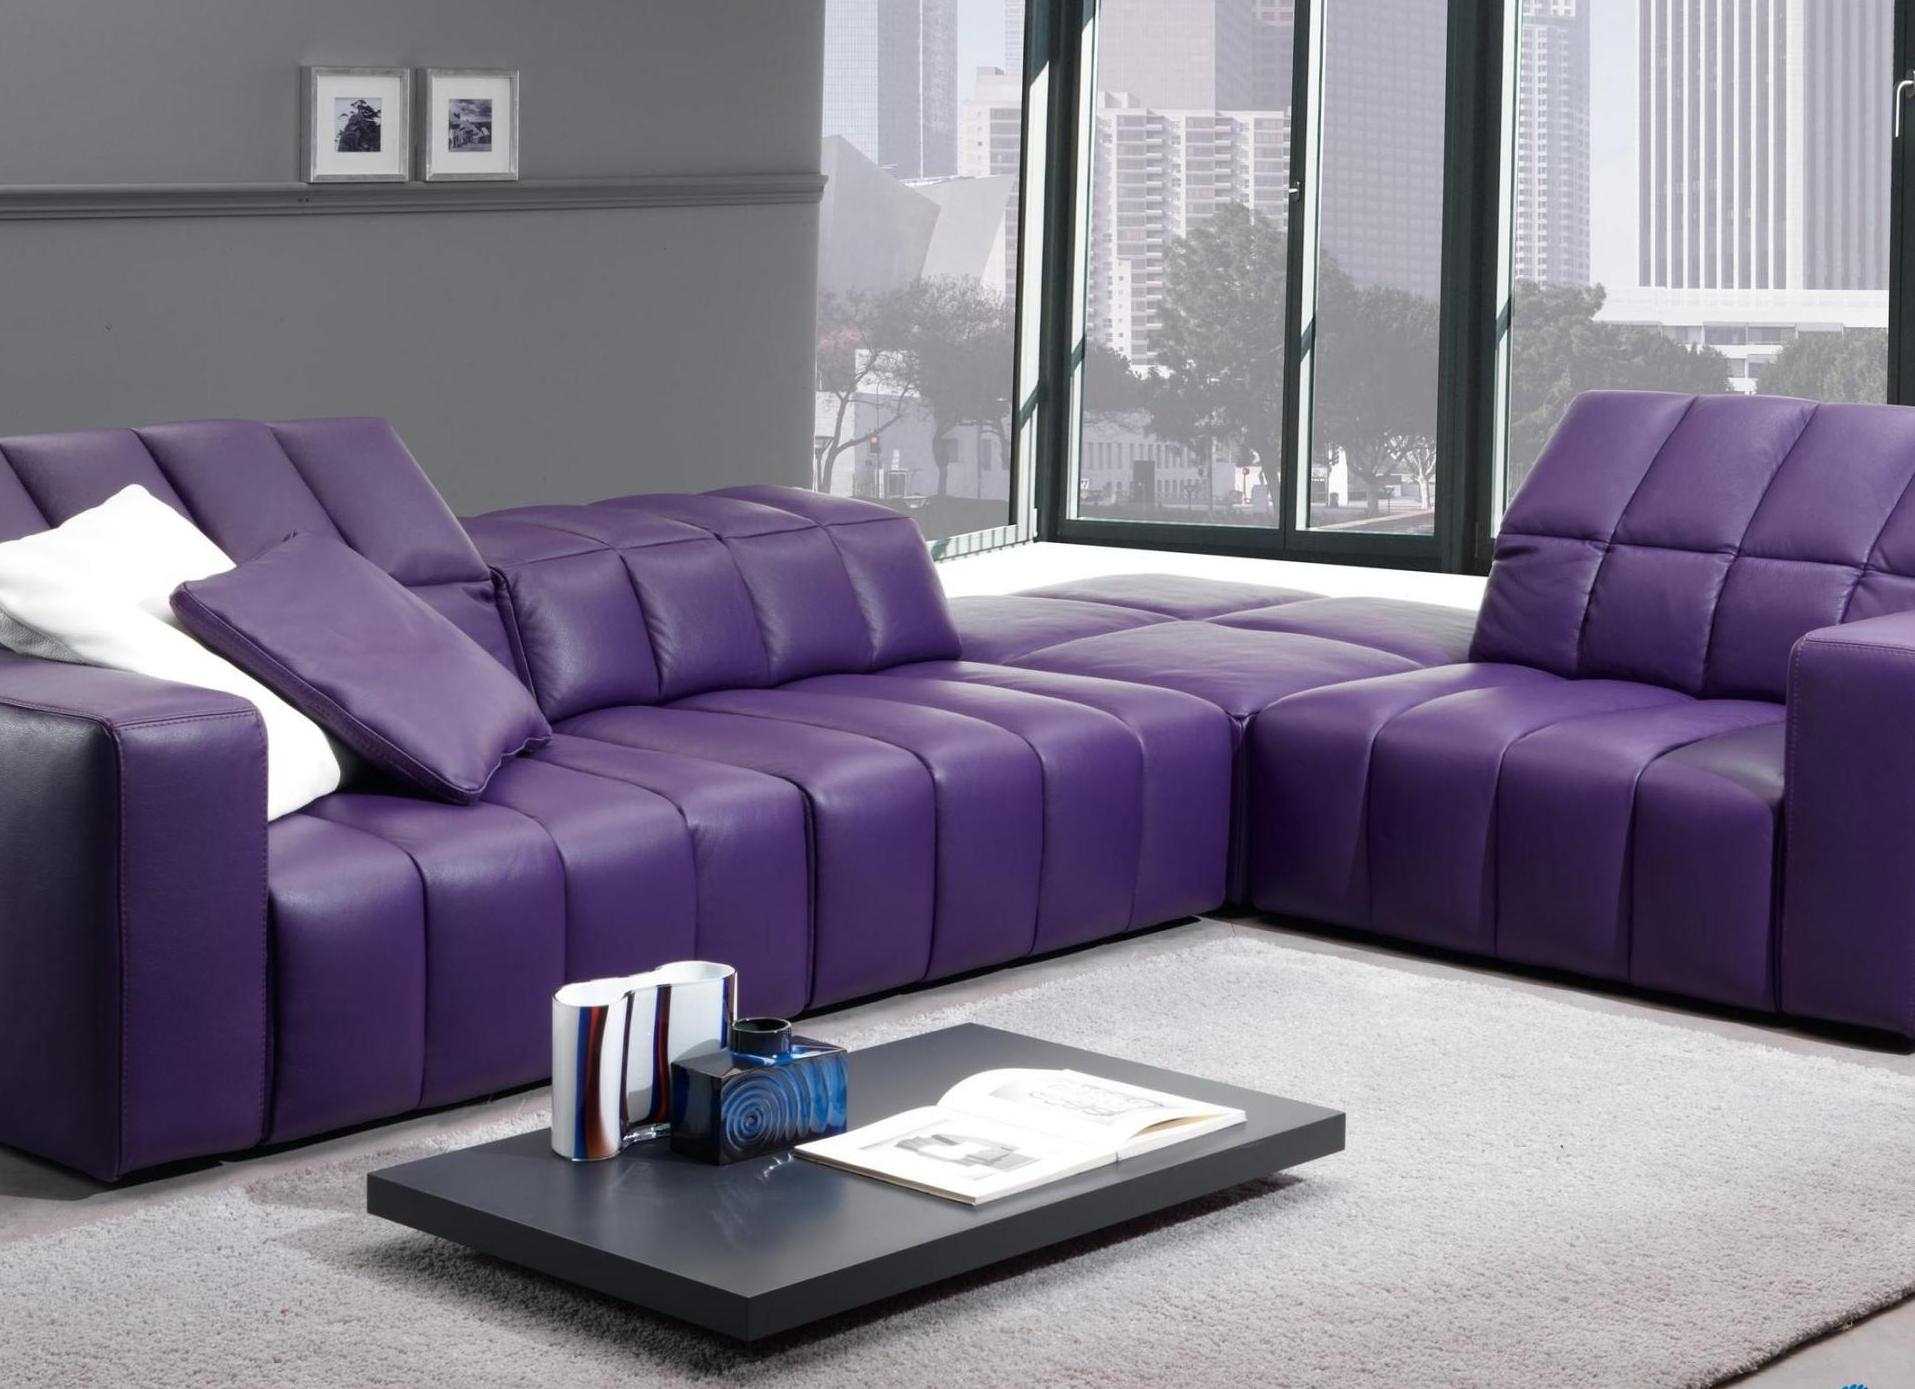 canapé violet clair dans la conception de la chambre